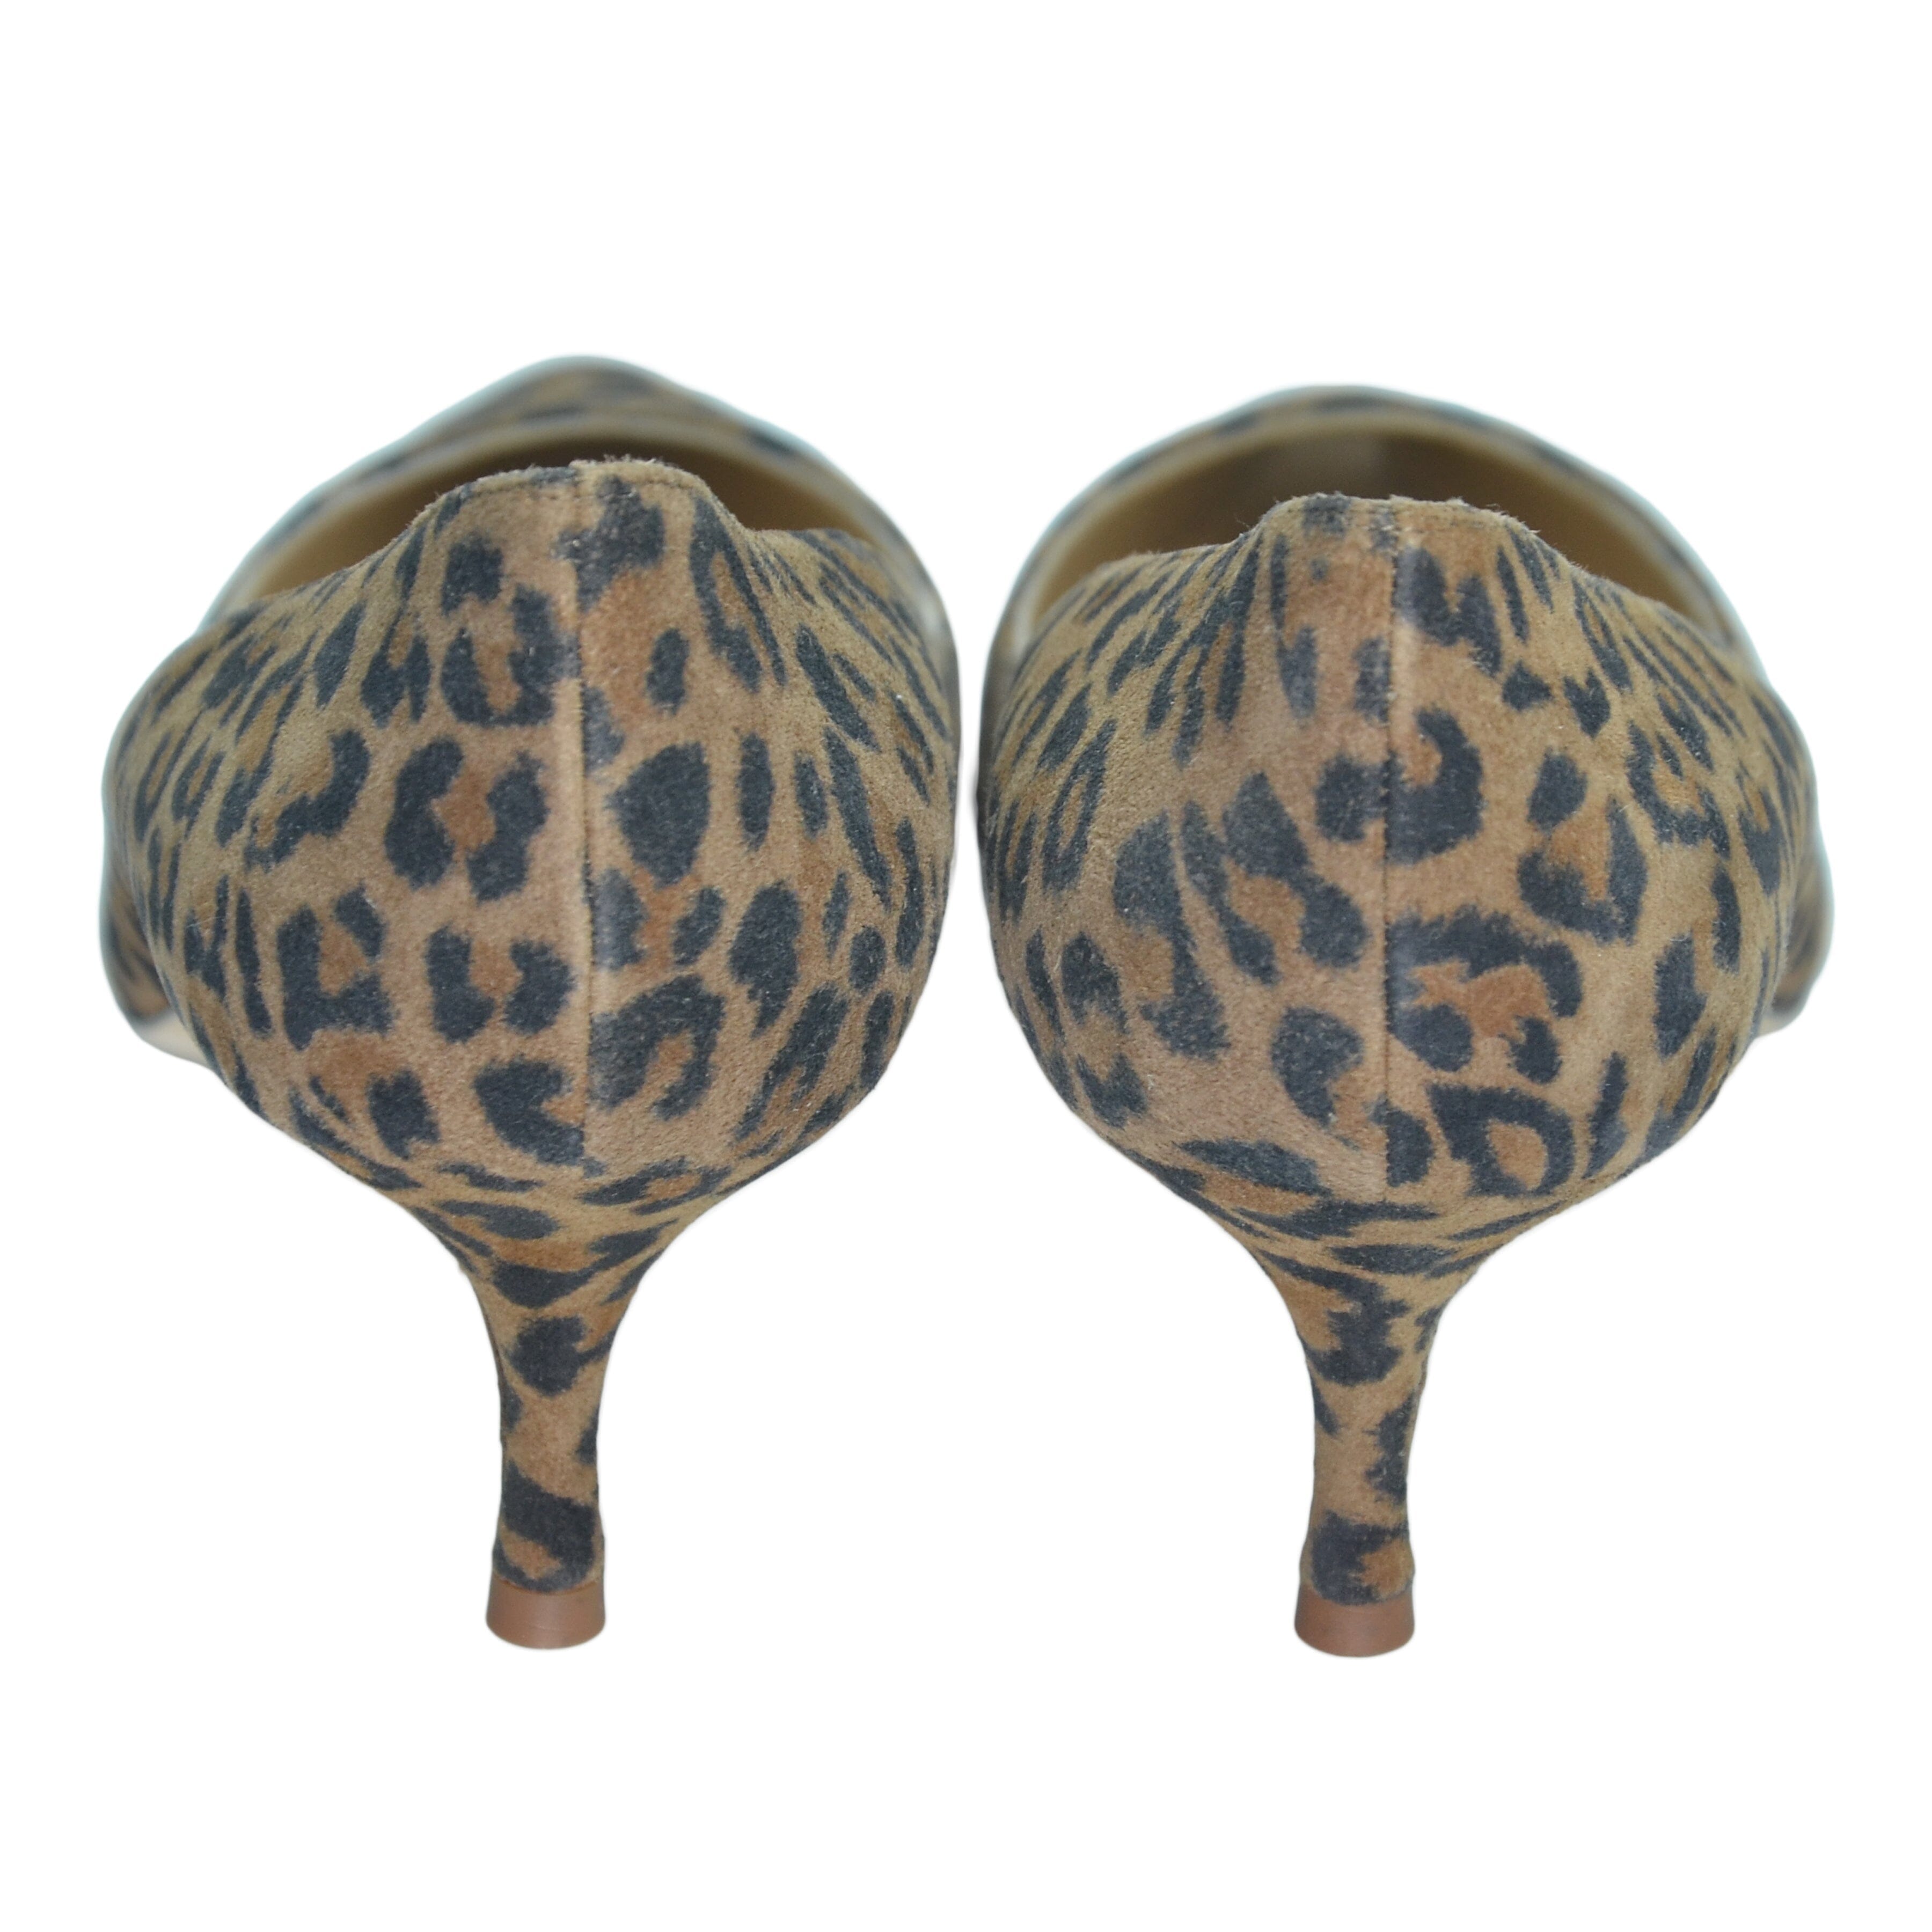 Brown Leopard Print Kitten Heel Pumps Shoes Manolo Blahnik